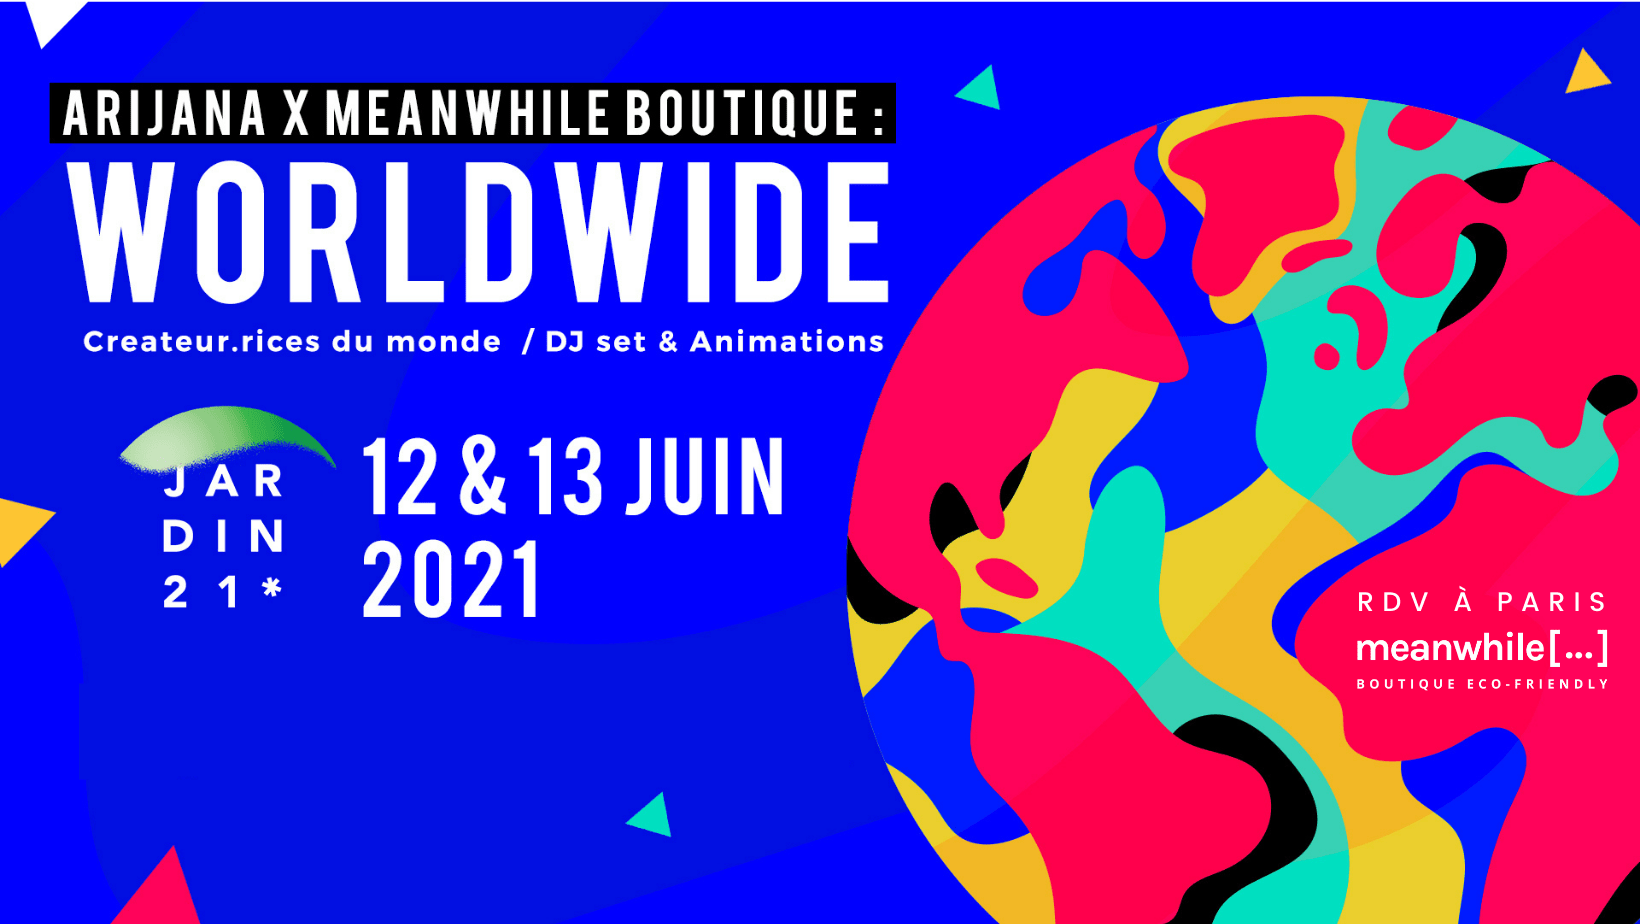 worldwide evenement au Jardin 21 Arijana x meanwhile Boutique paris Juin 2021